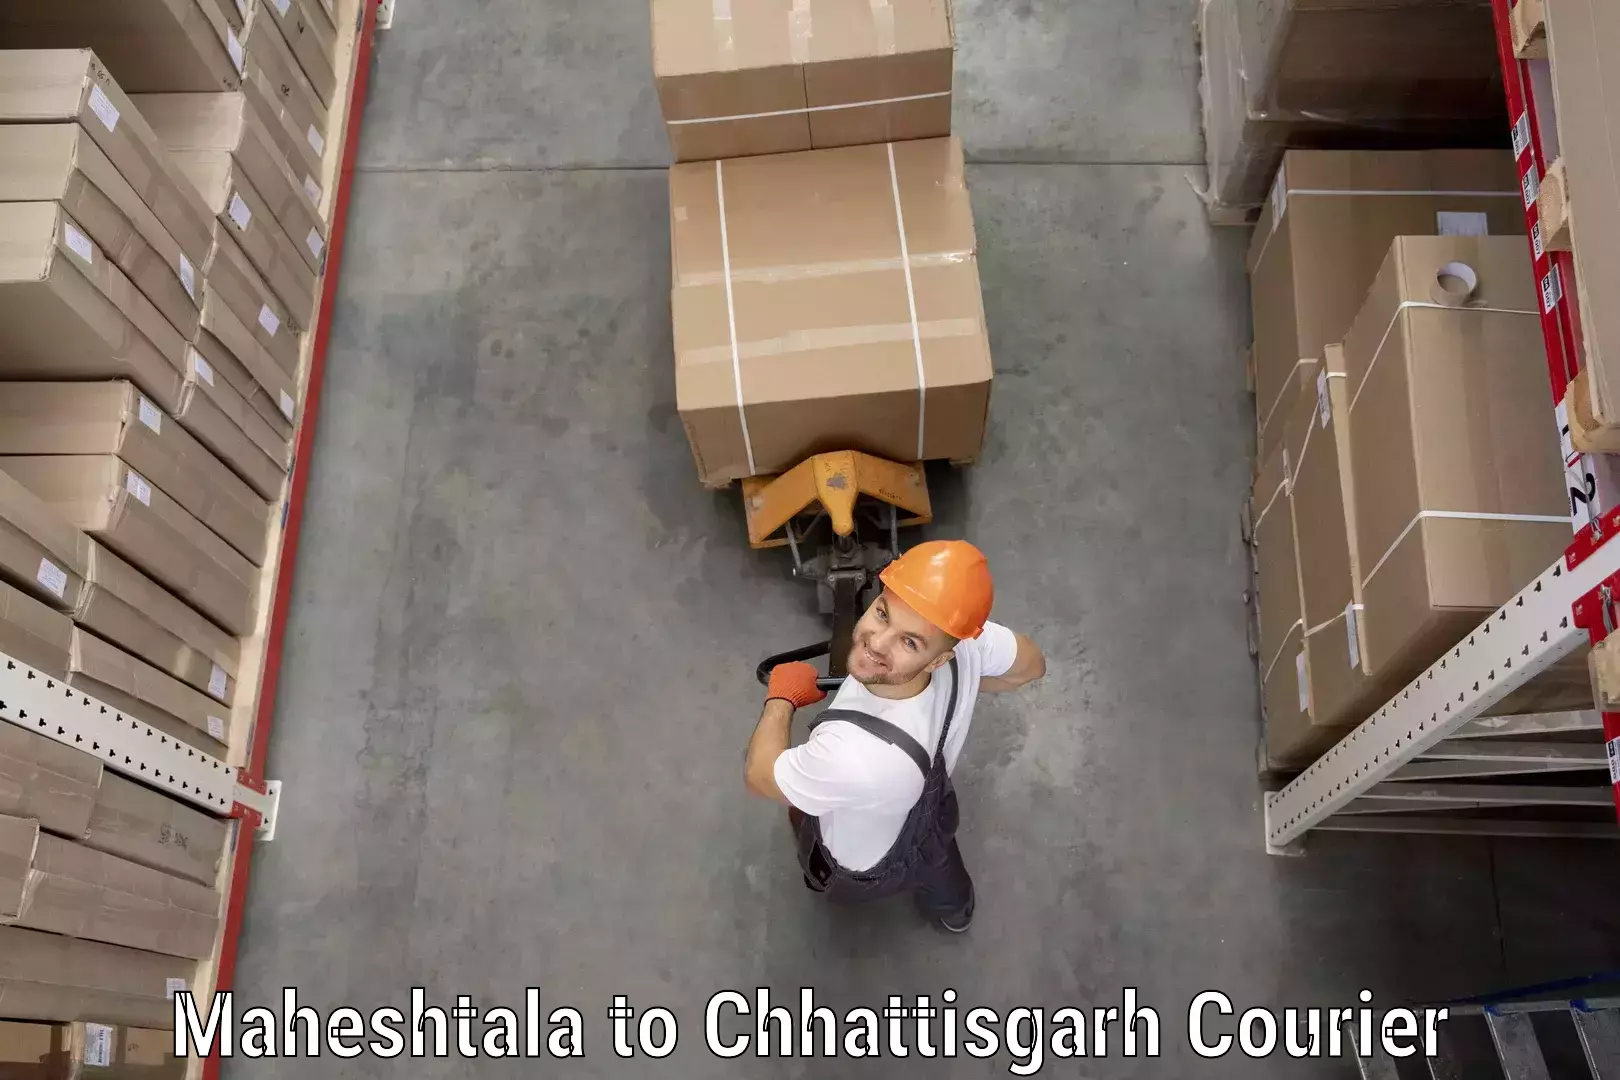 Cargo delivery service Maheshtala to Kusmi